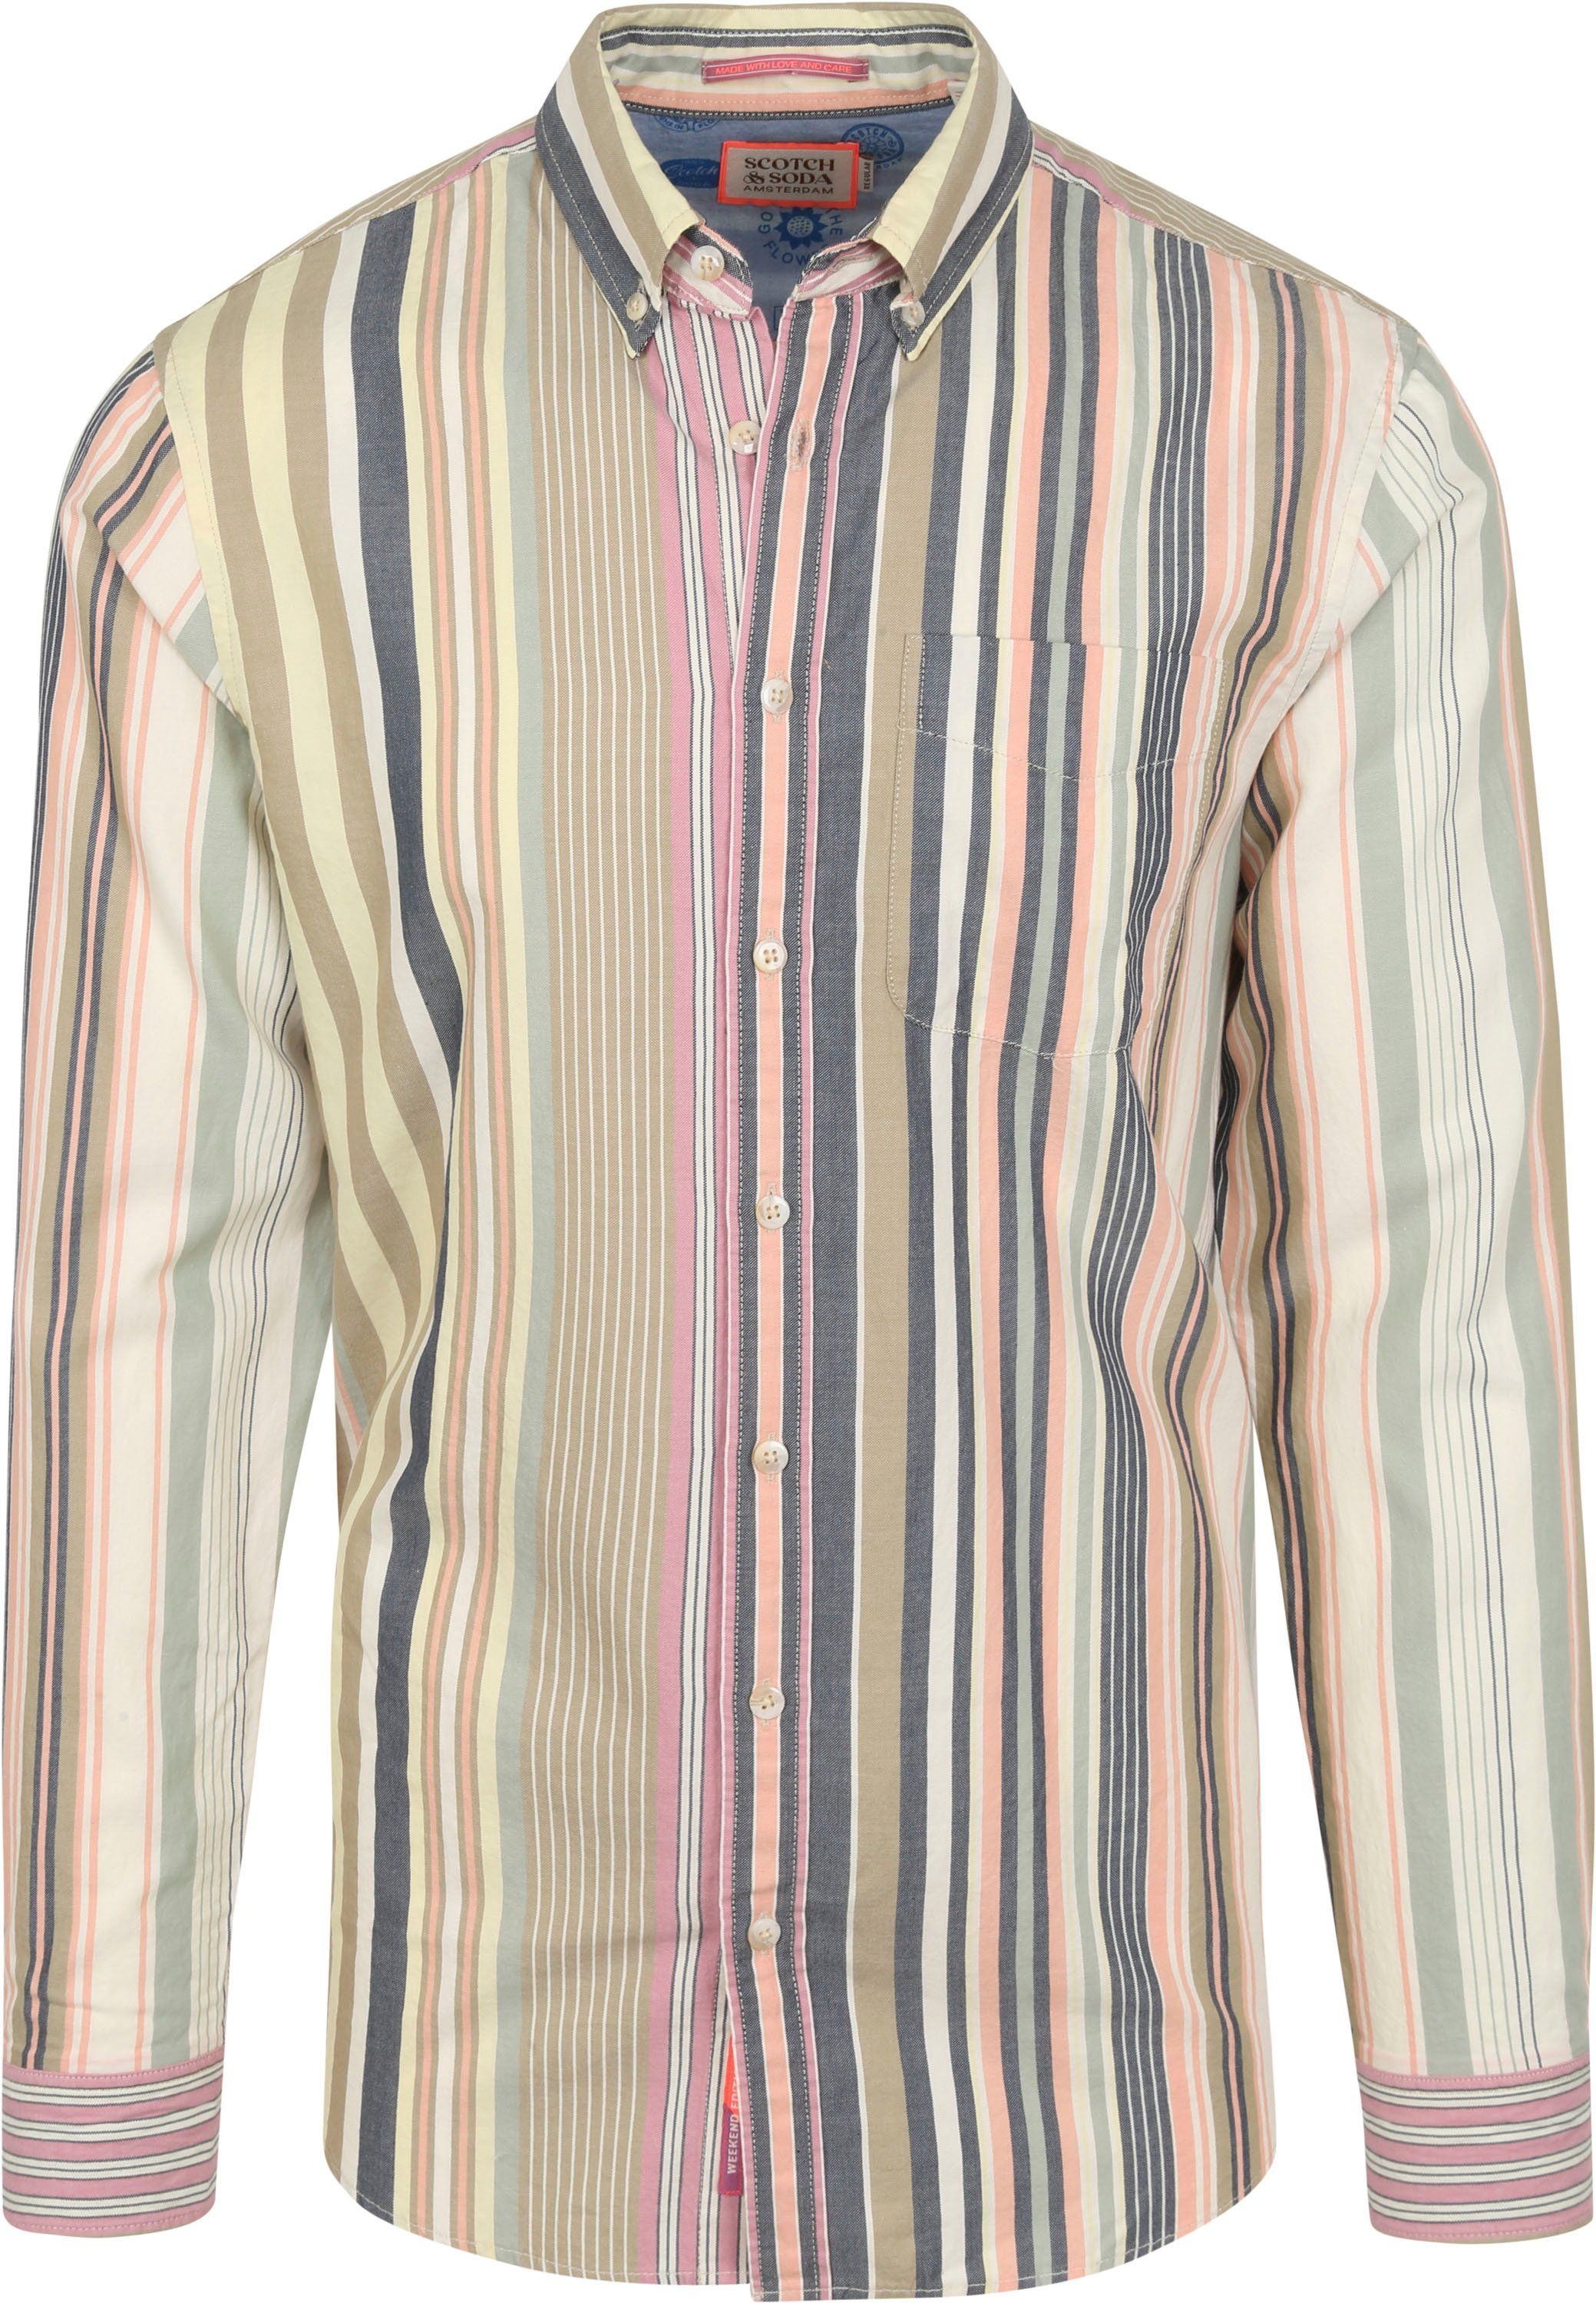 Scotch and Soda Shirt Striped Multicolour size L